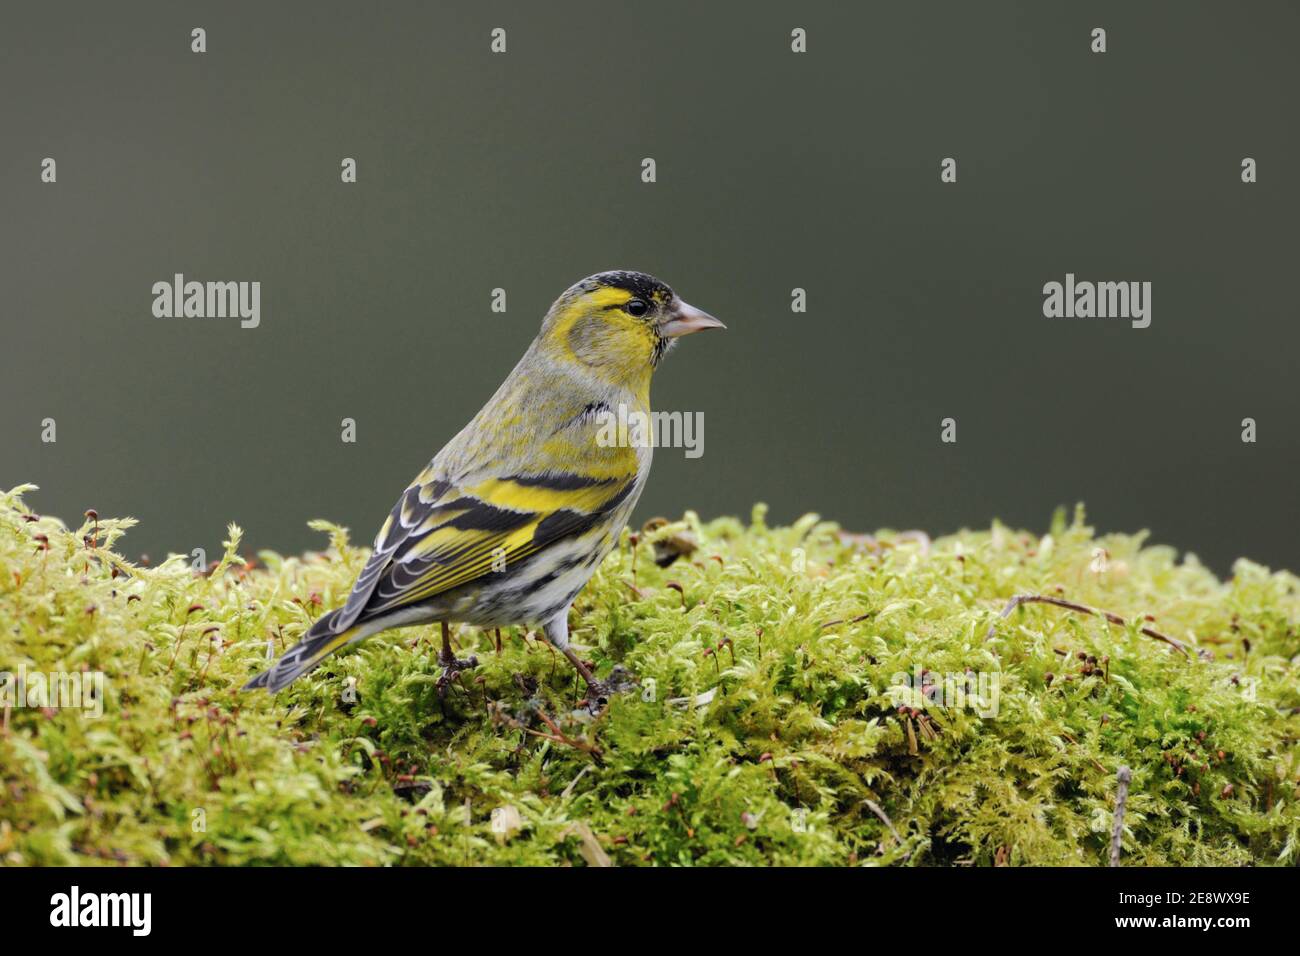 Siskin eurasien ( Spinus spinus ), oiseau mâle en robe de reproduction, assis sur le sol en mousse verte, faune, Europe. Banque D'Images